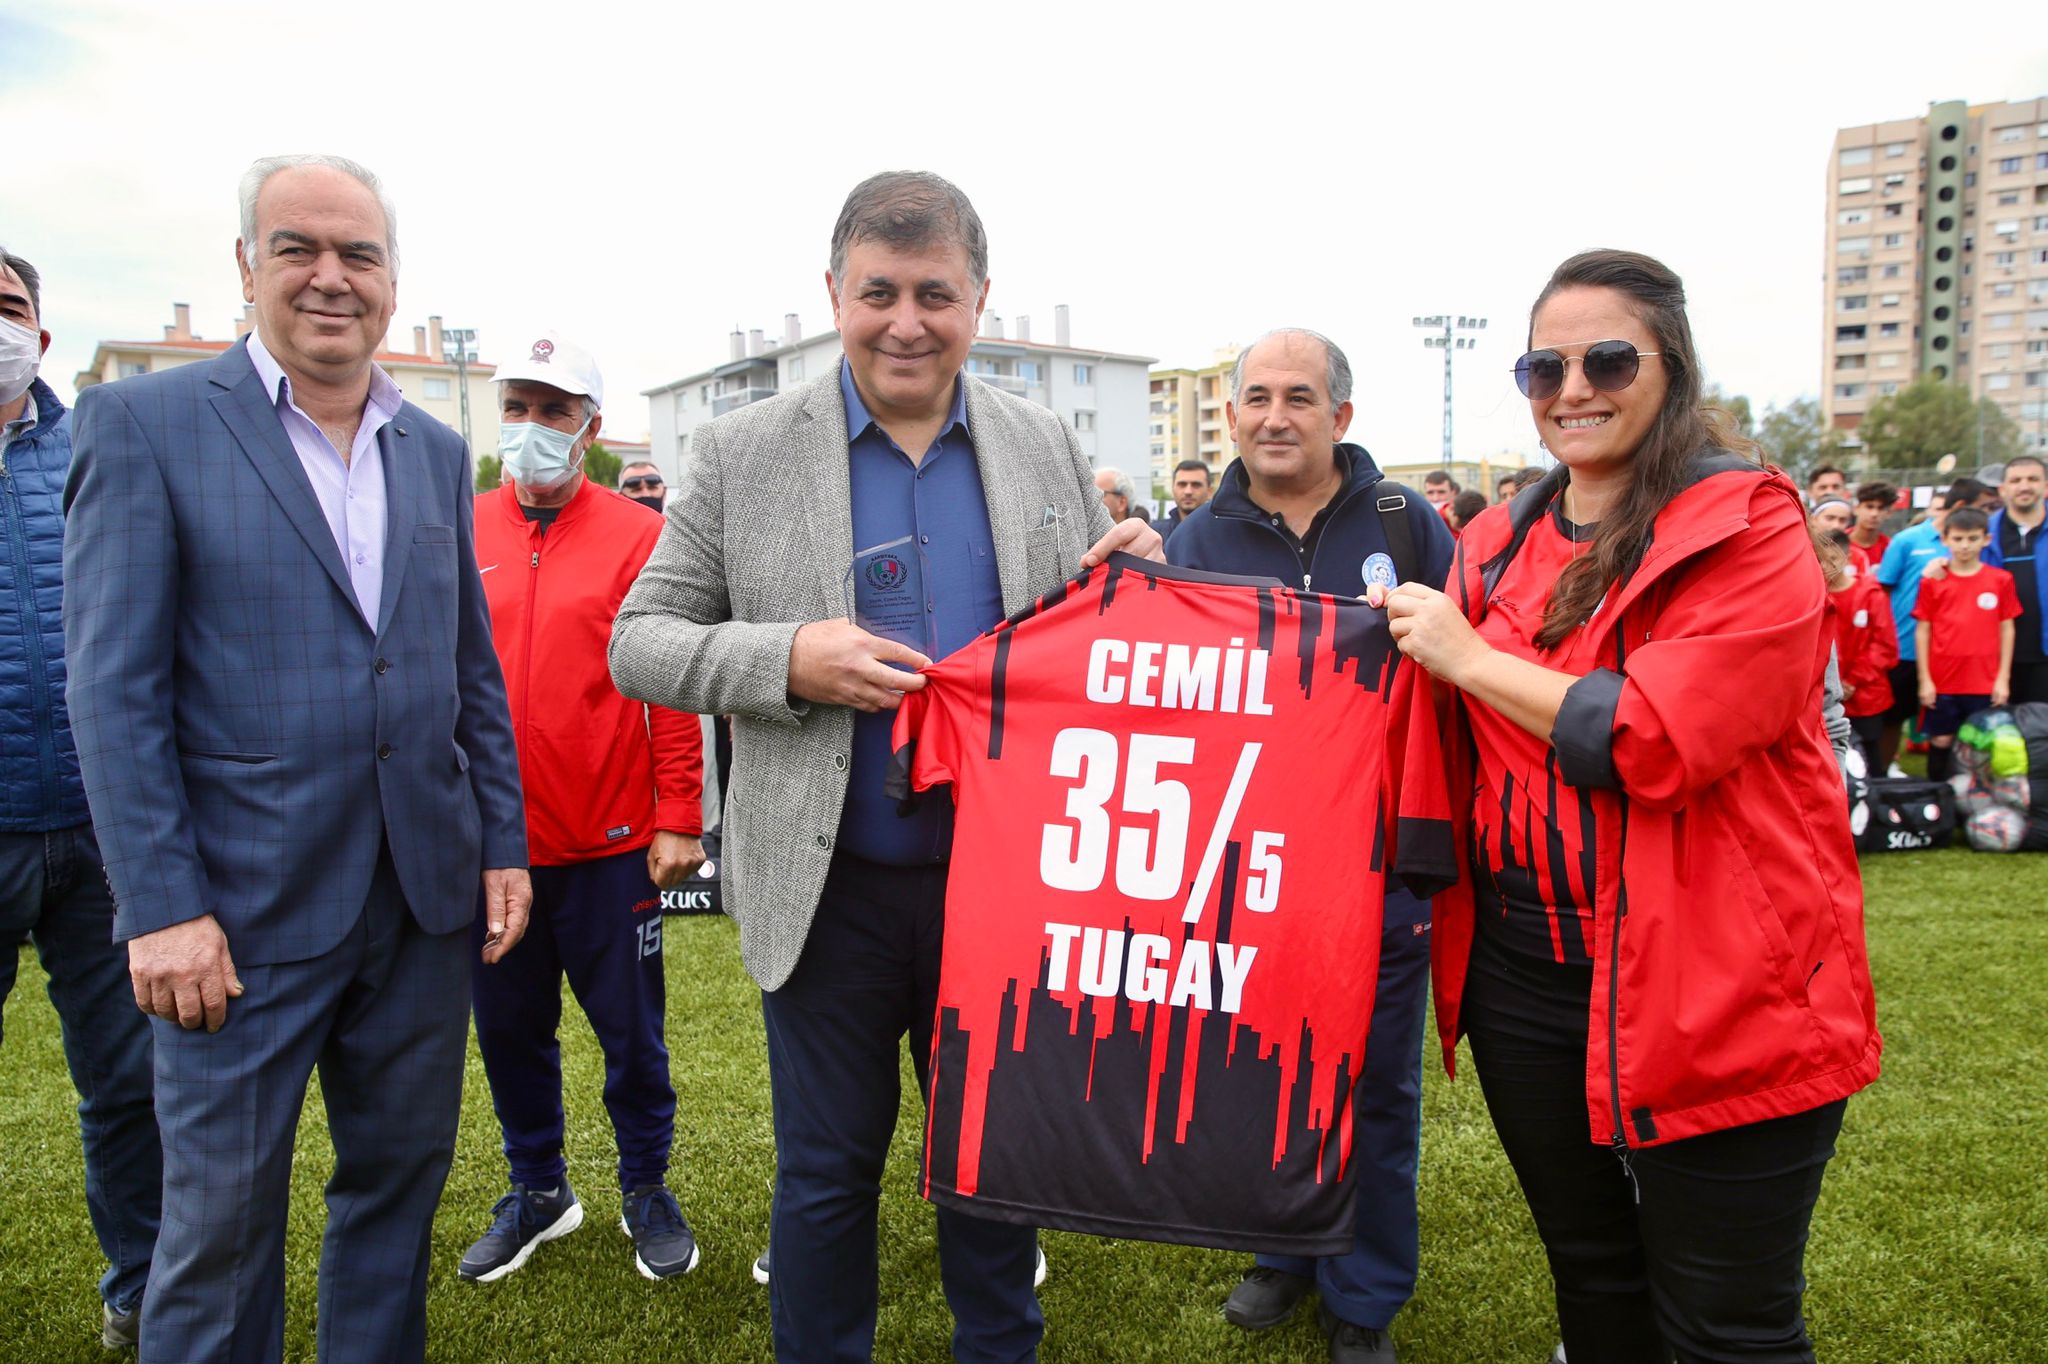 Karşıyaka Belediyesi’nden amatör spor kulüplerine destek